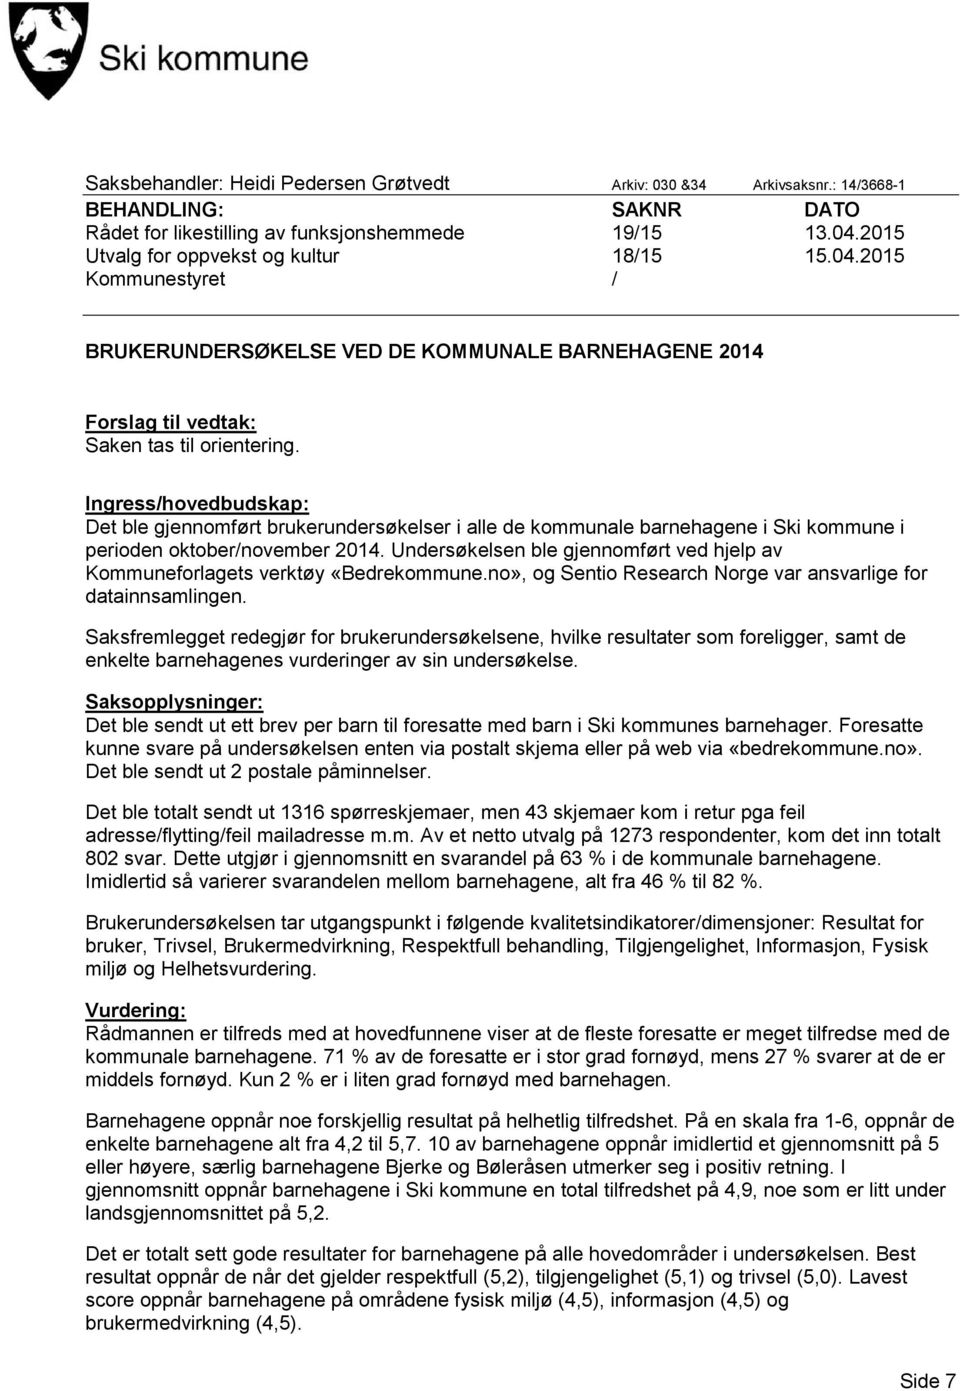 Ingress/hovedbudskap: Det ble gjennomført brukerundersøkelser i alle de kommunale barnehagene i Ski kommune i perioden oktober/november 2014.